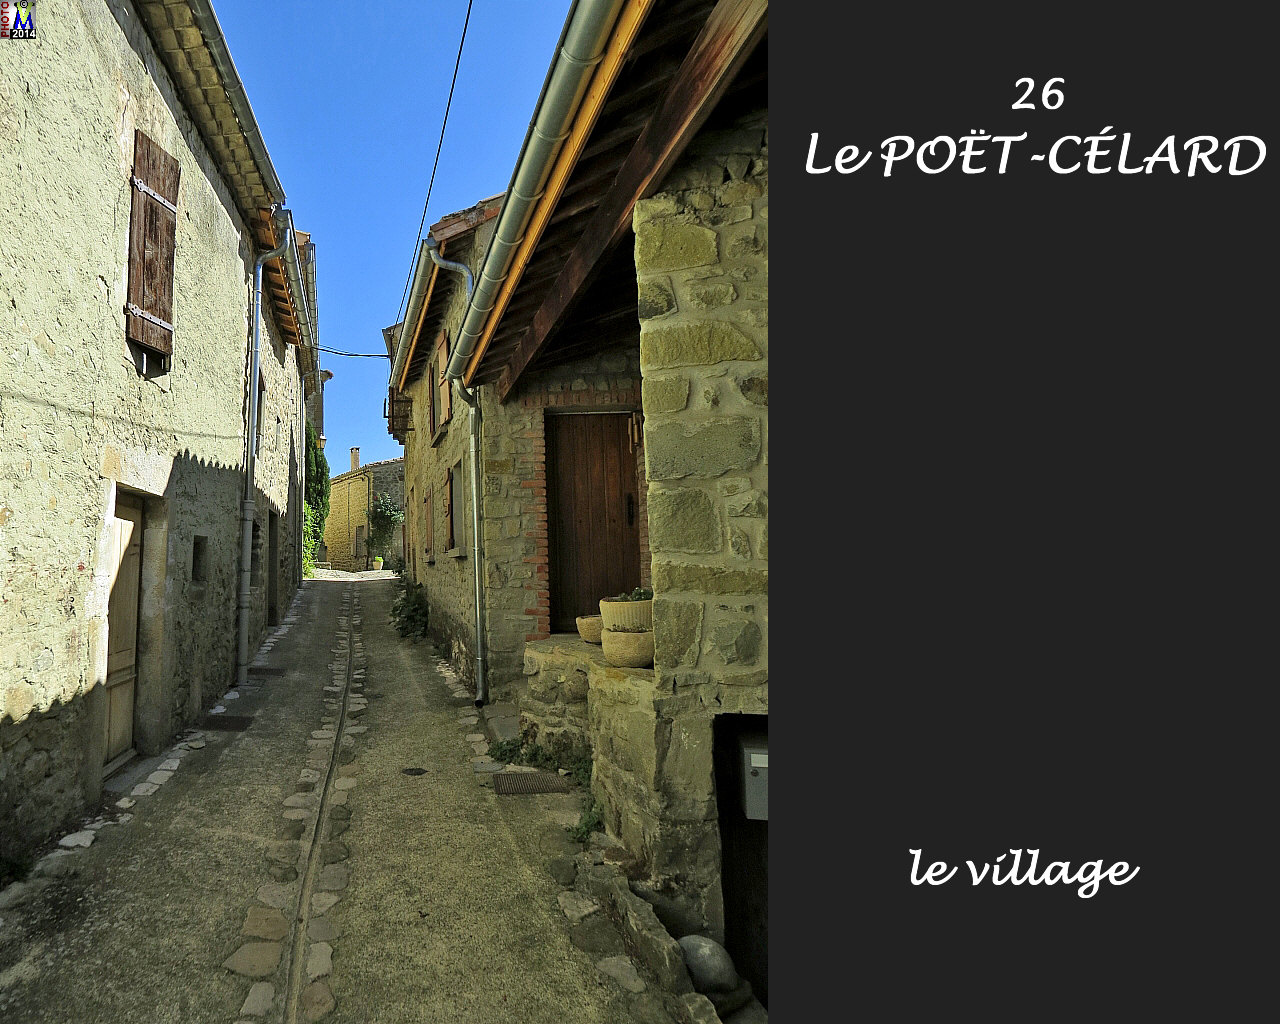 26POET-CELARD_village_110.jpg